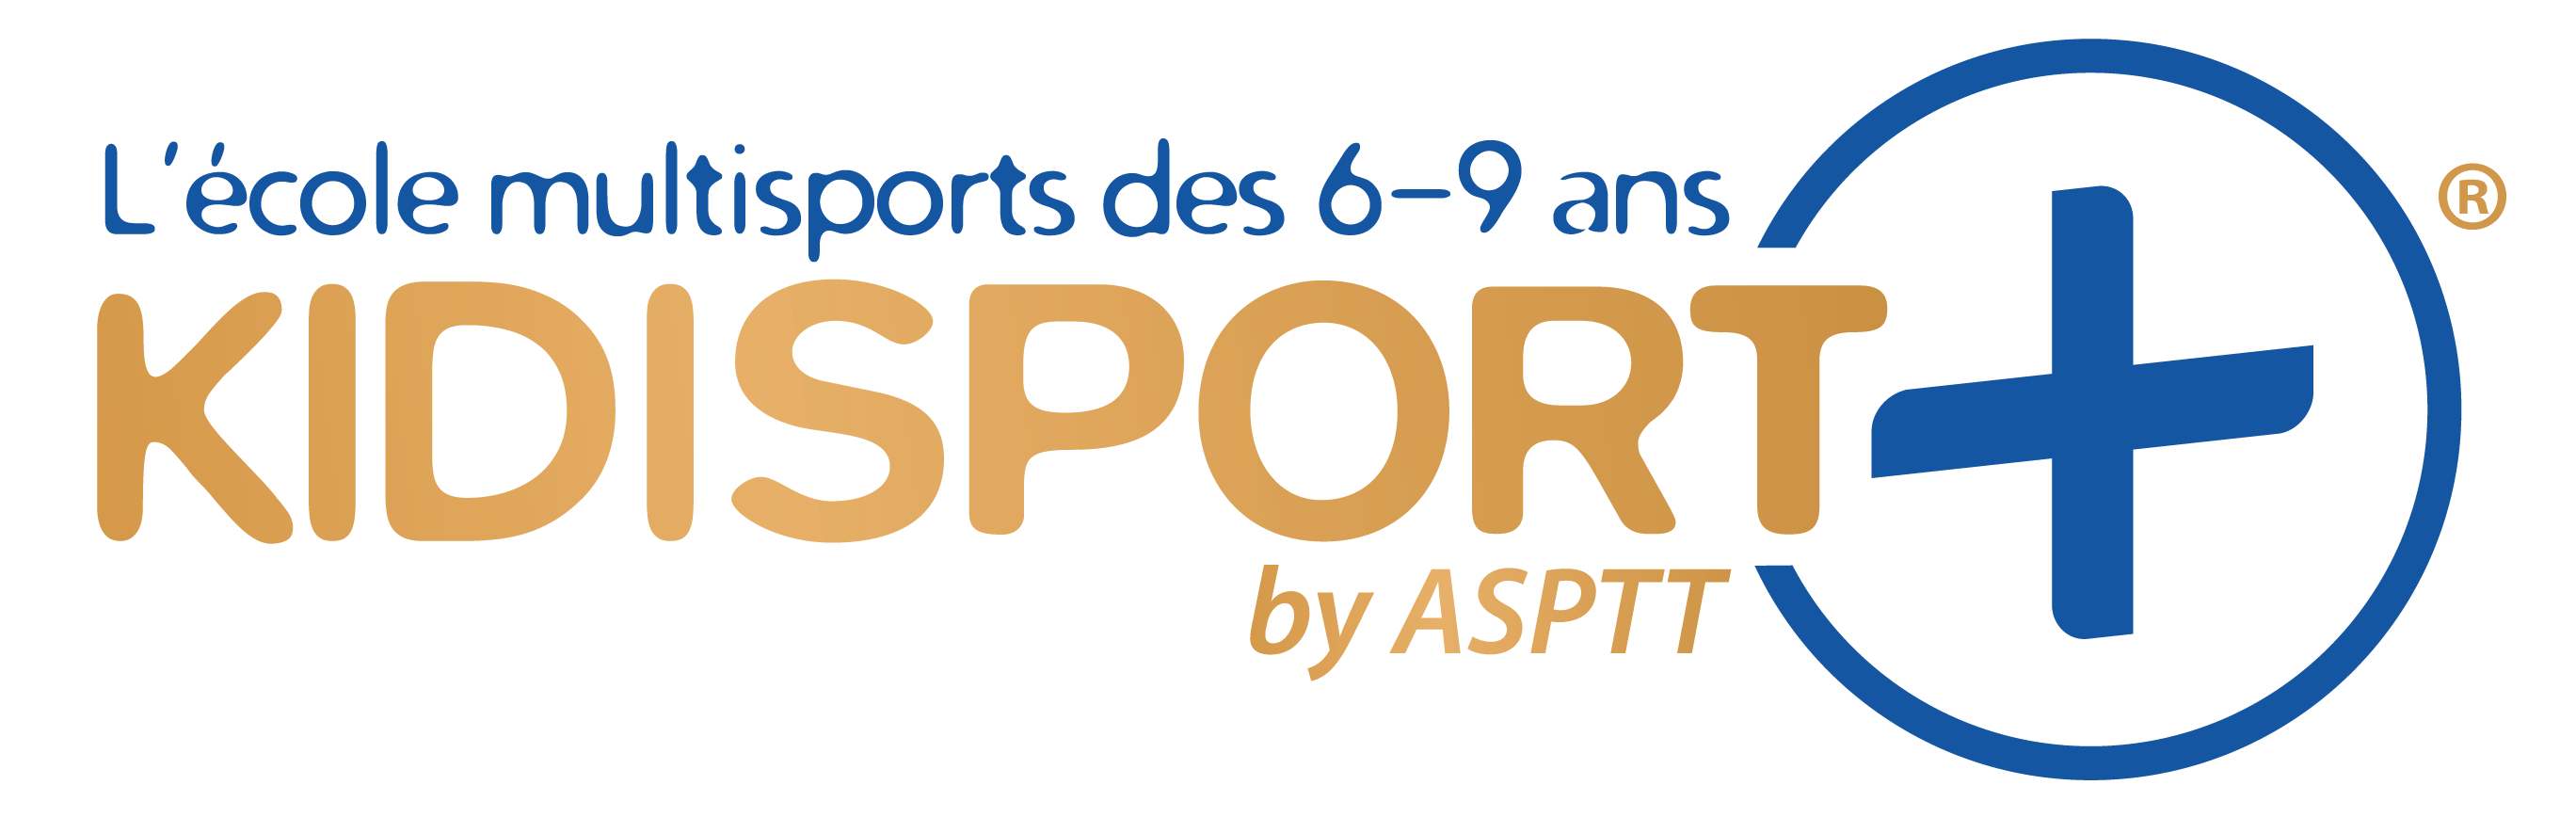 Multisport 7-11 ans-KidiSPORT + | ASPTT Besançon